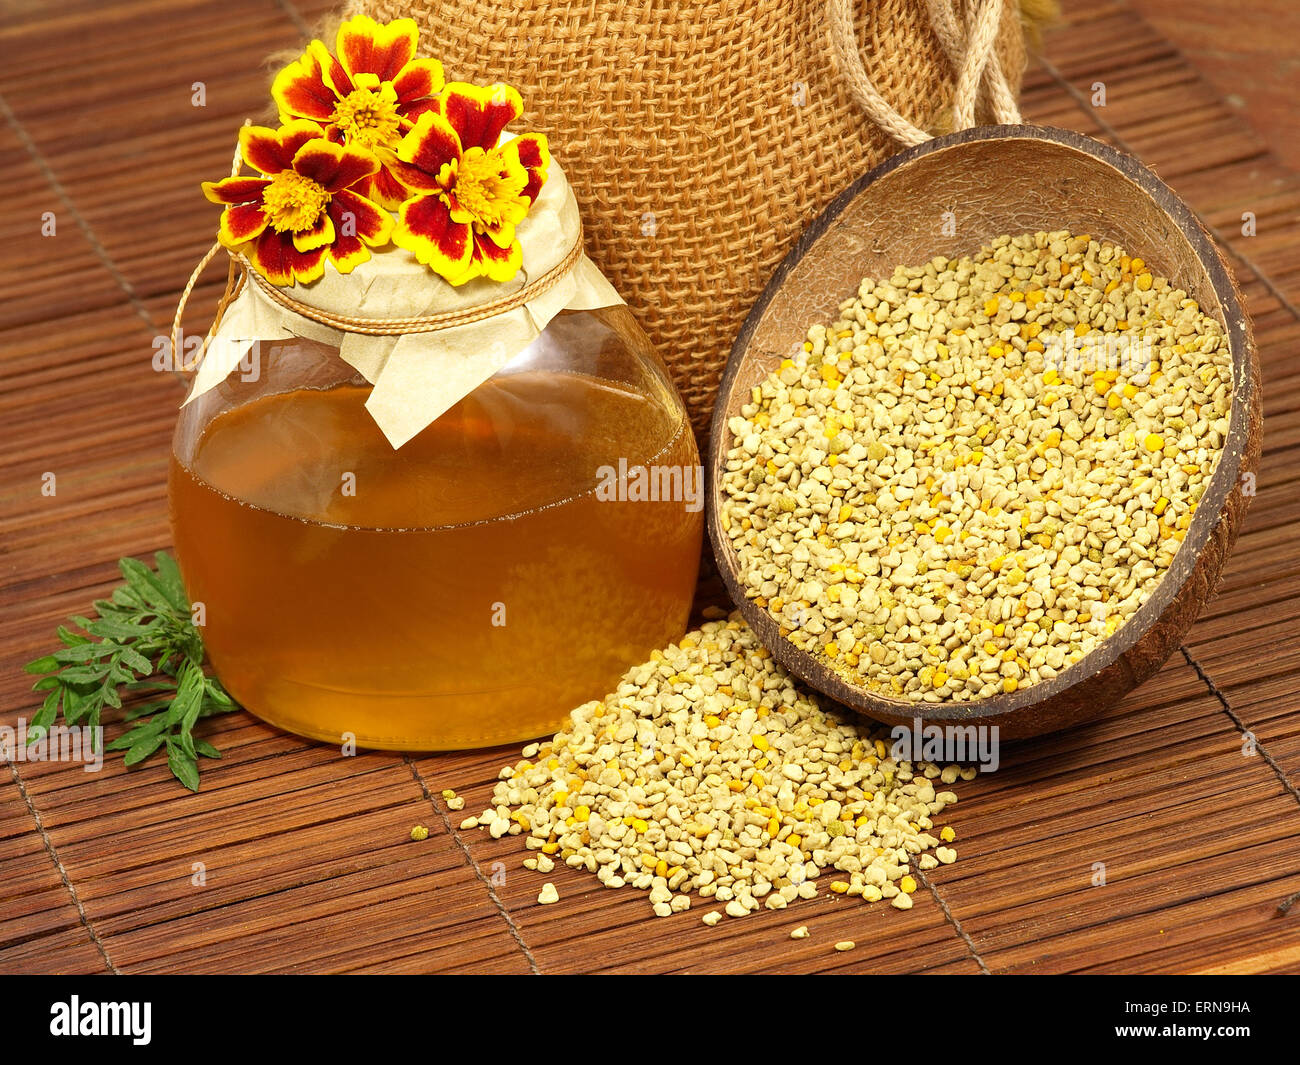 Pot de miel,fleurs jaunes et du pollen sur une surface en bois. Banque D'Images